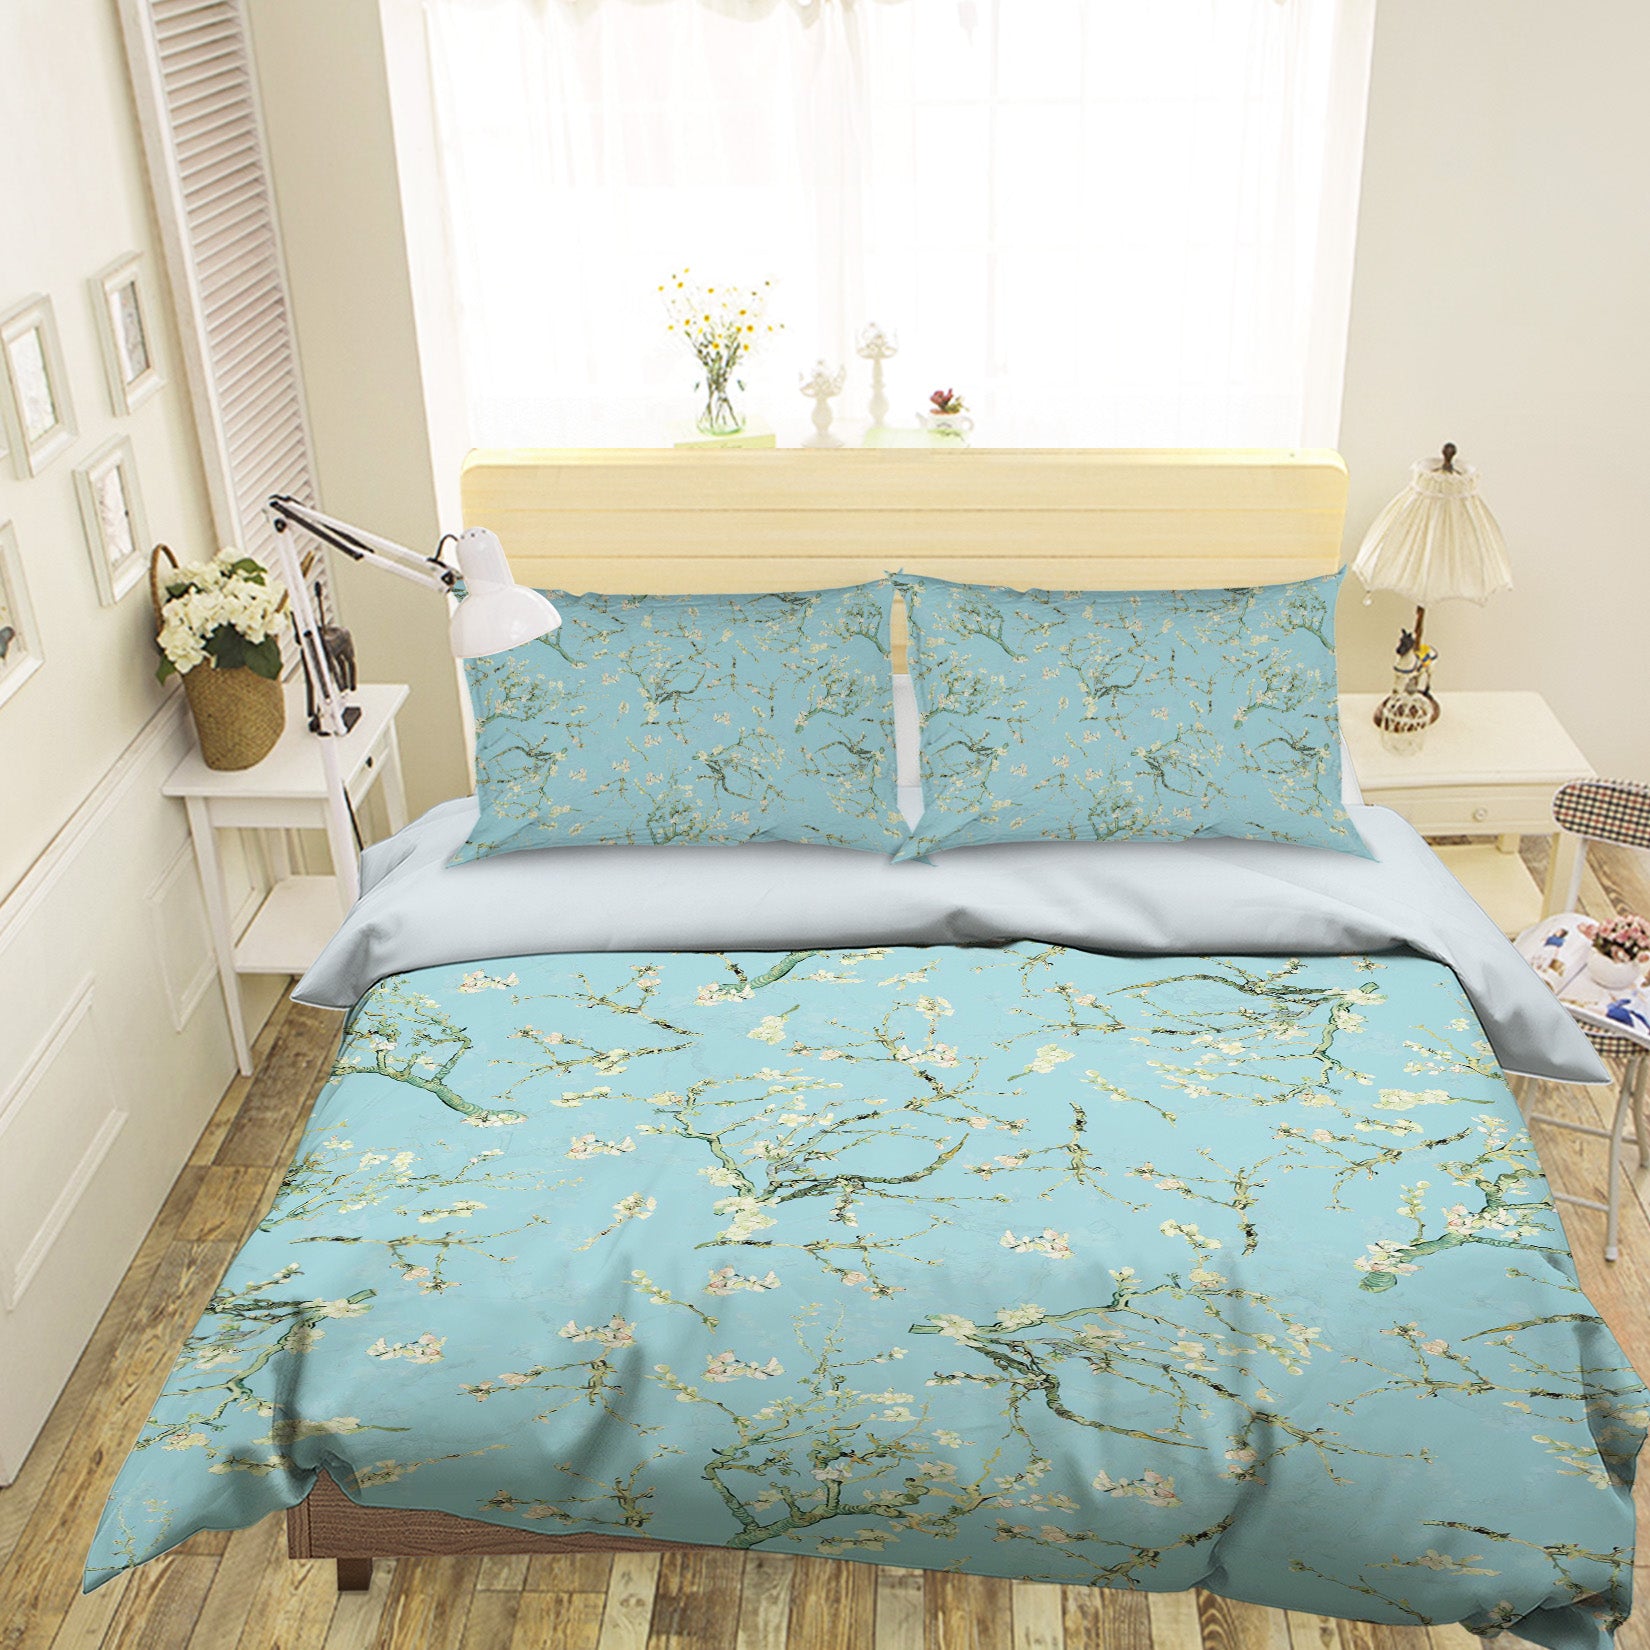 3D Flower Branches 154 Uta Naumann Bedding Bed Pillowcases Quilt